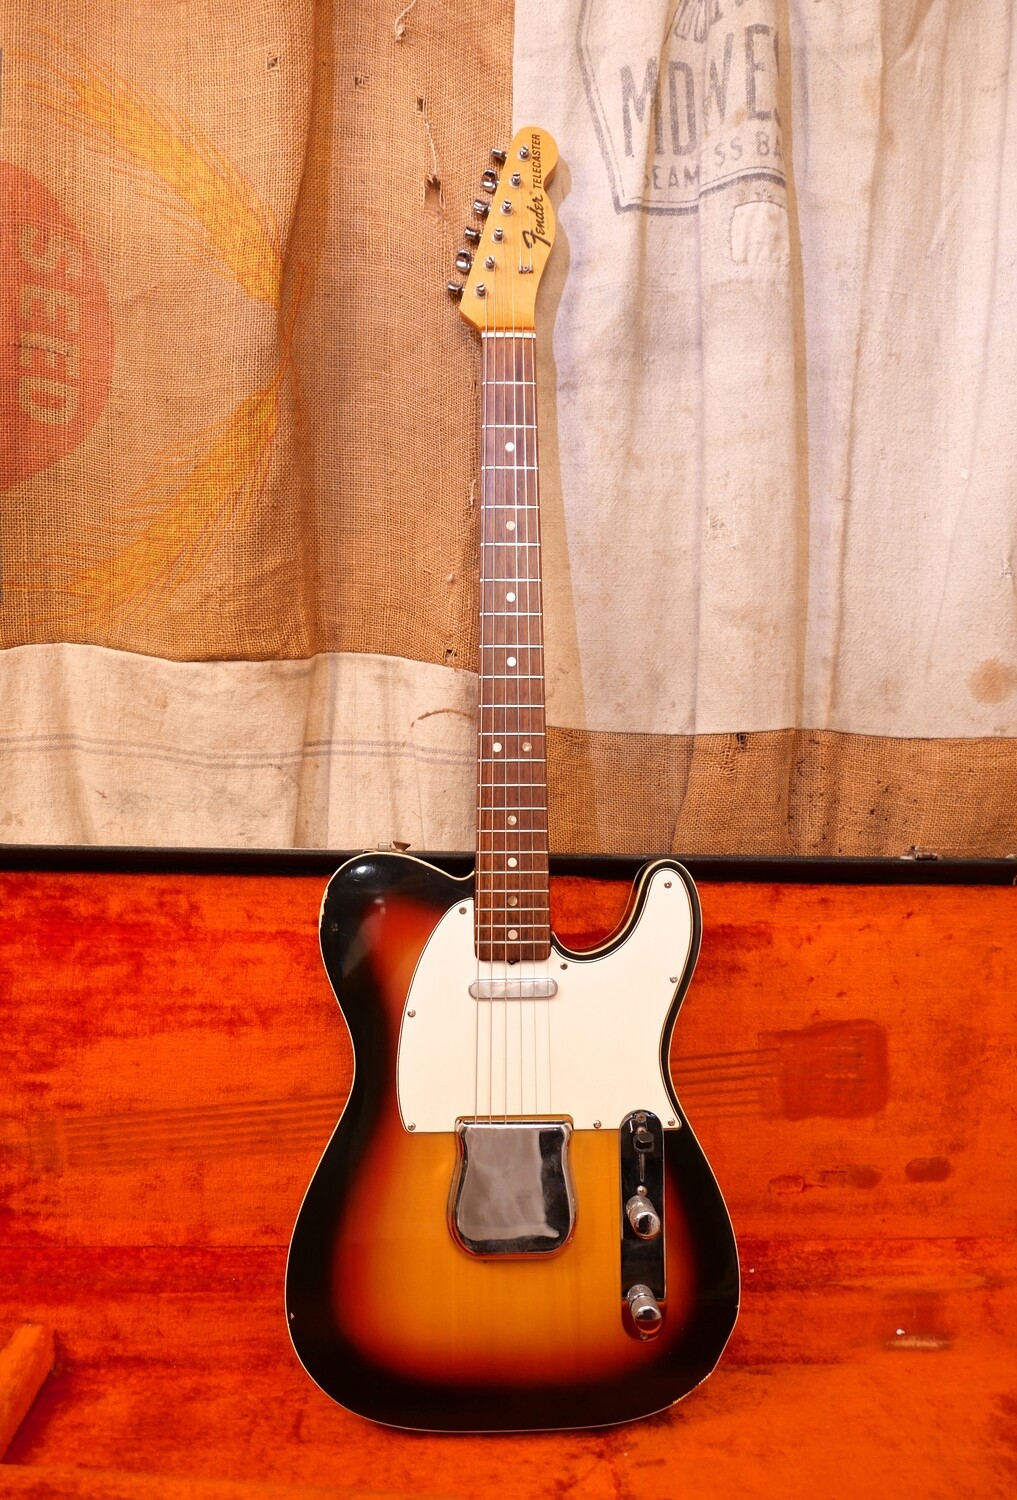 1967 Fender Telecaster Custom Sunburst